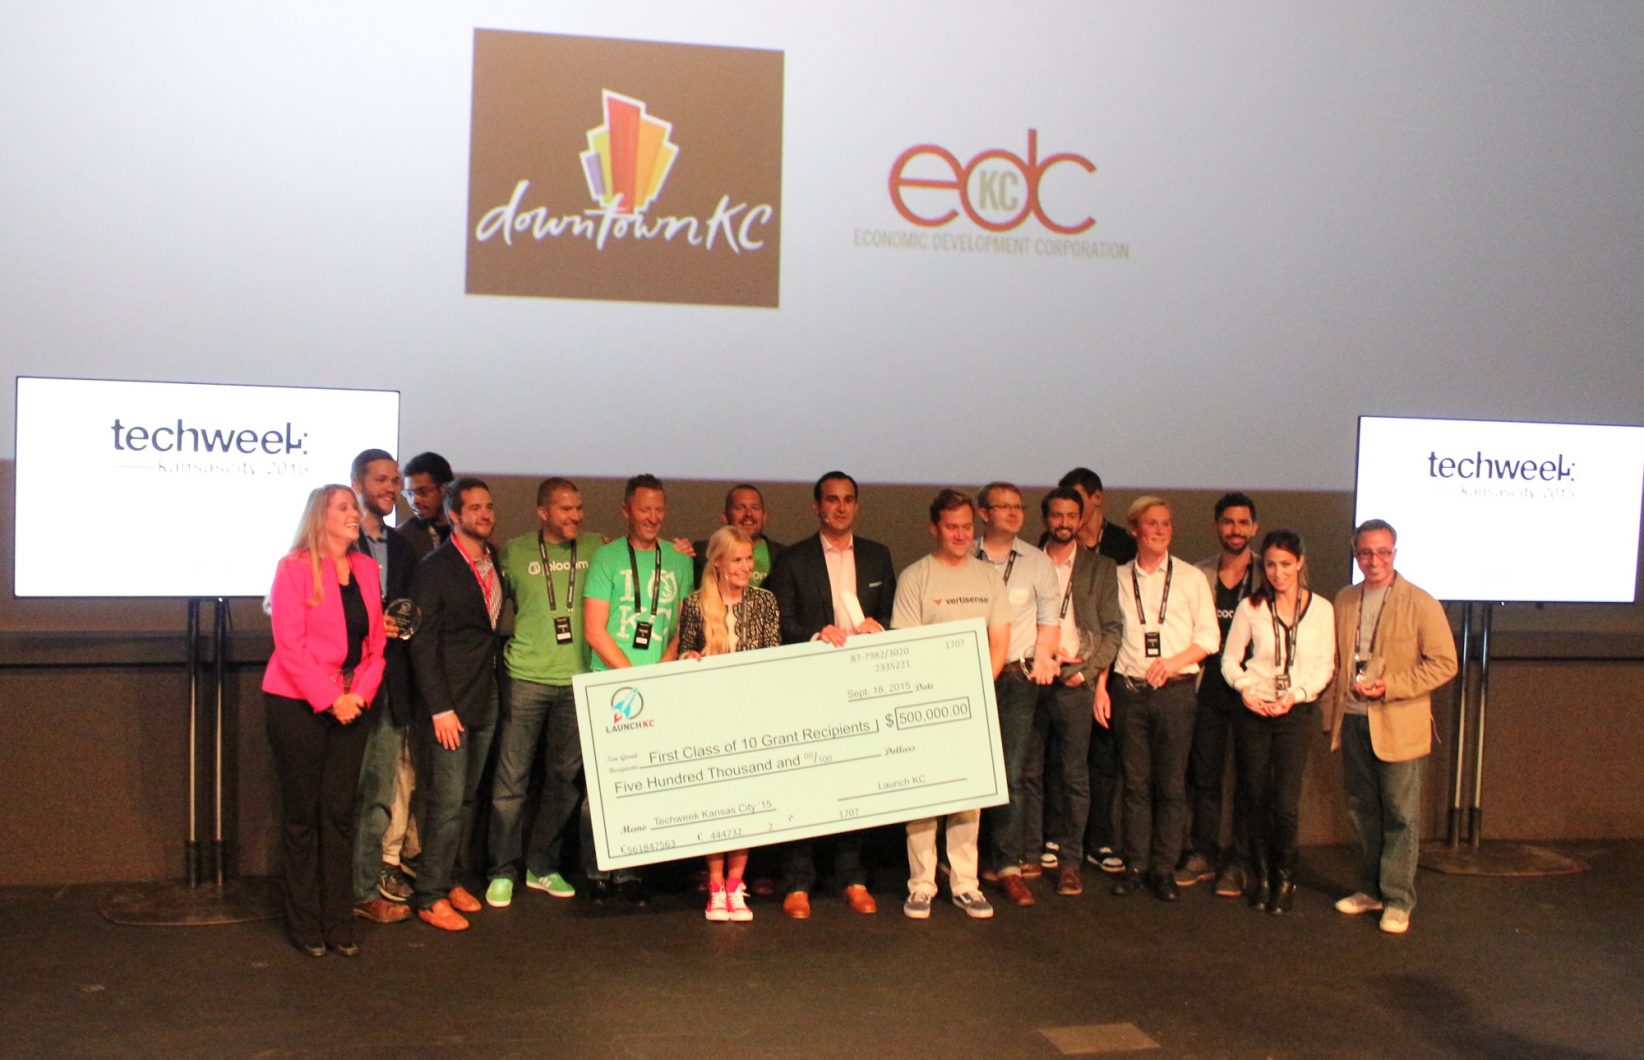 Meet the 10 startup winners of LaunchKC's $50K